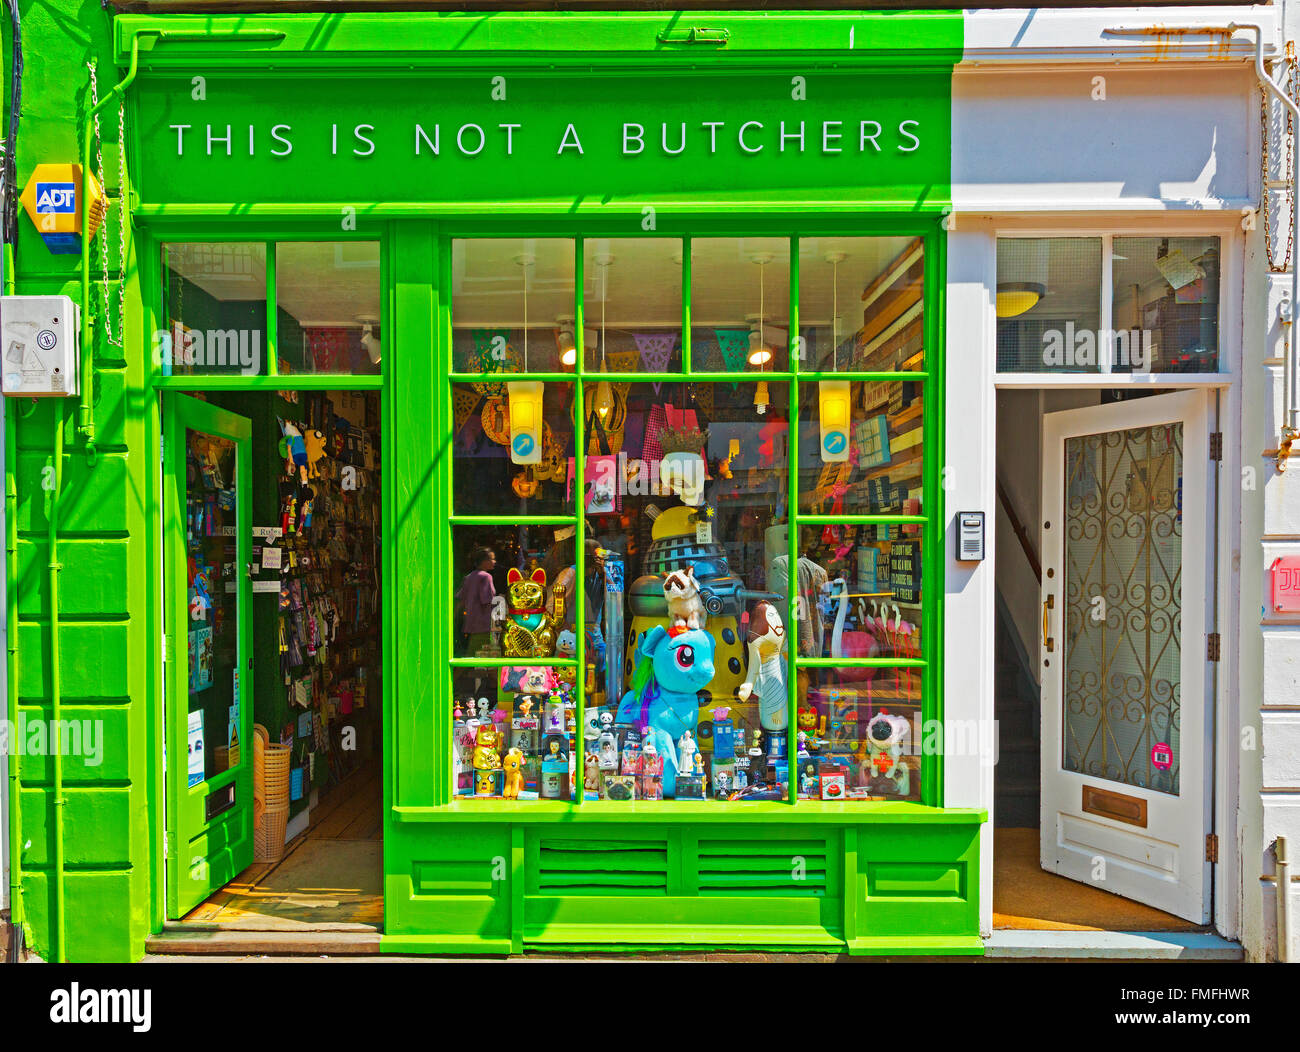 Brighton und Hove Regency / Edwardian / viktorianischen Architektur, illustriert es vorbei ist.  Humurous os-Shop UK Stockfoto